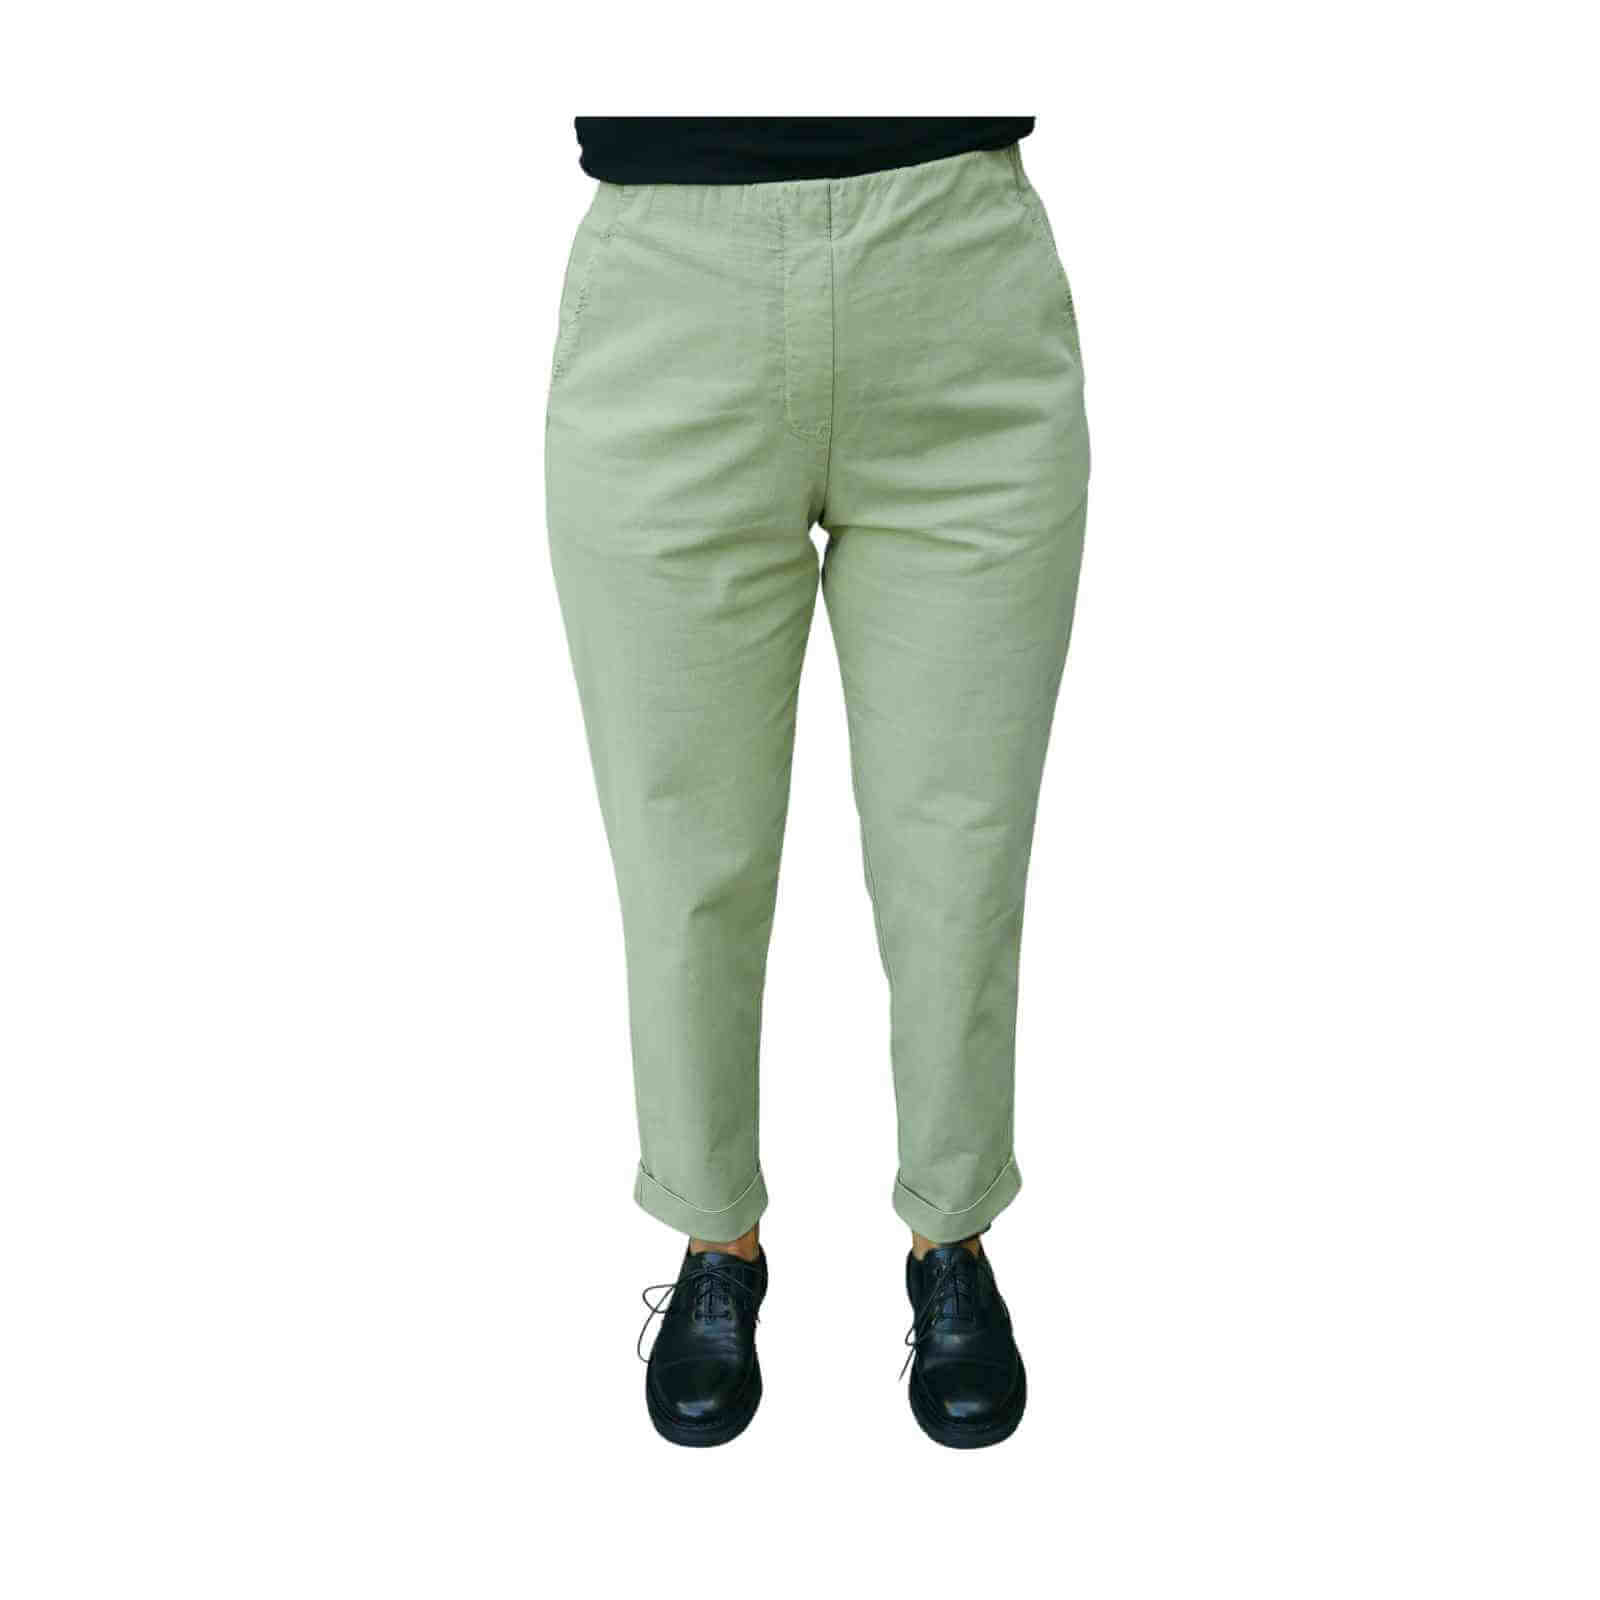 Oska bukser med elastik i livet, model Eliisa i grøn hos Anbi